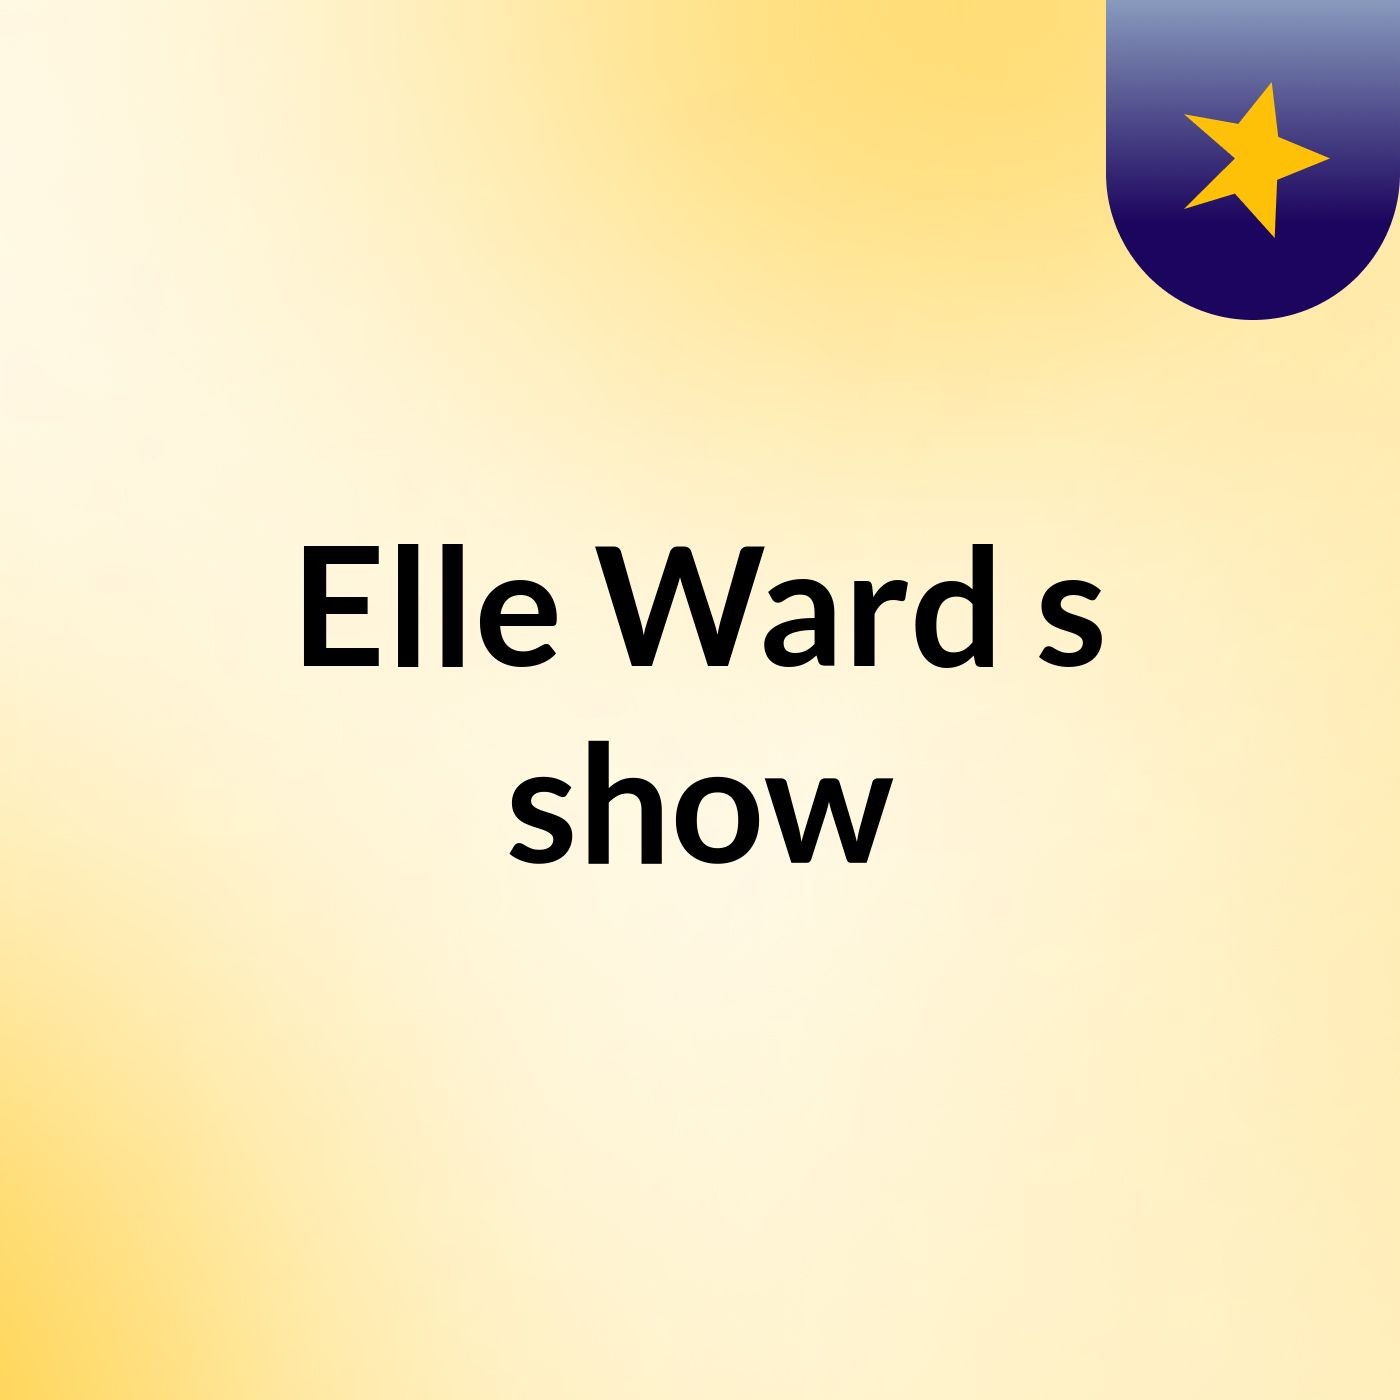 Elle Ward's show